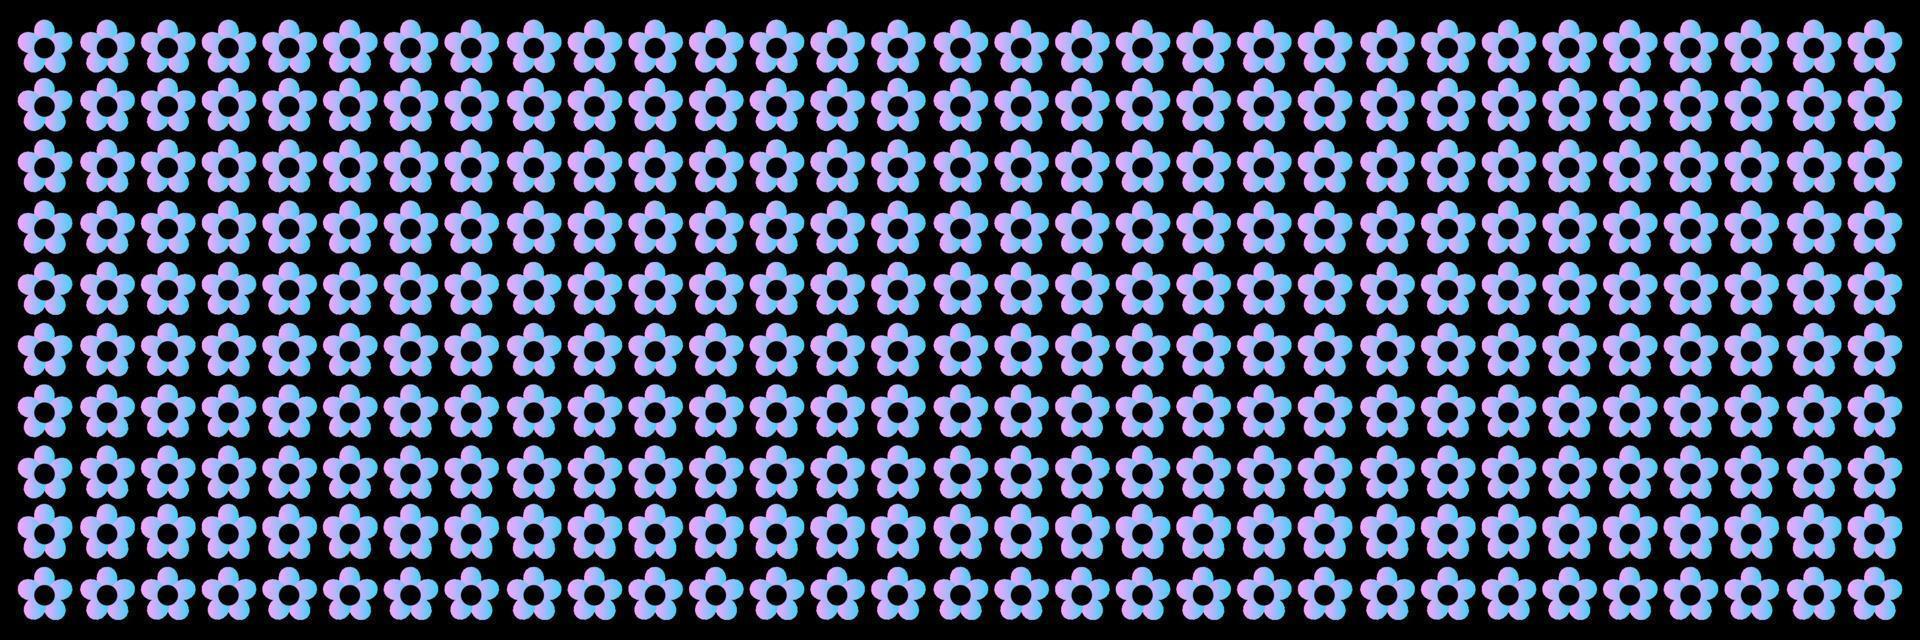 horisontell gräns med blommig mönster. vektor illustration. mörk bakgrund med små blå blommor i rad.